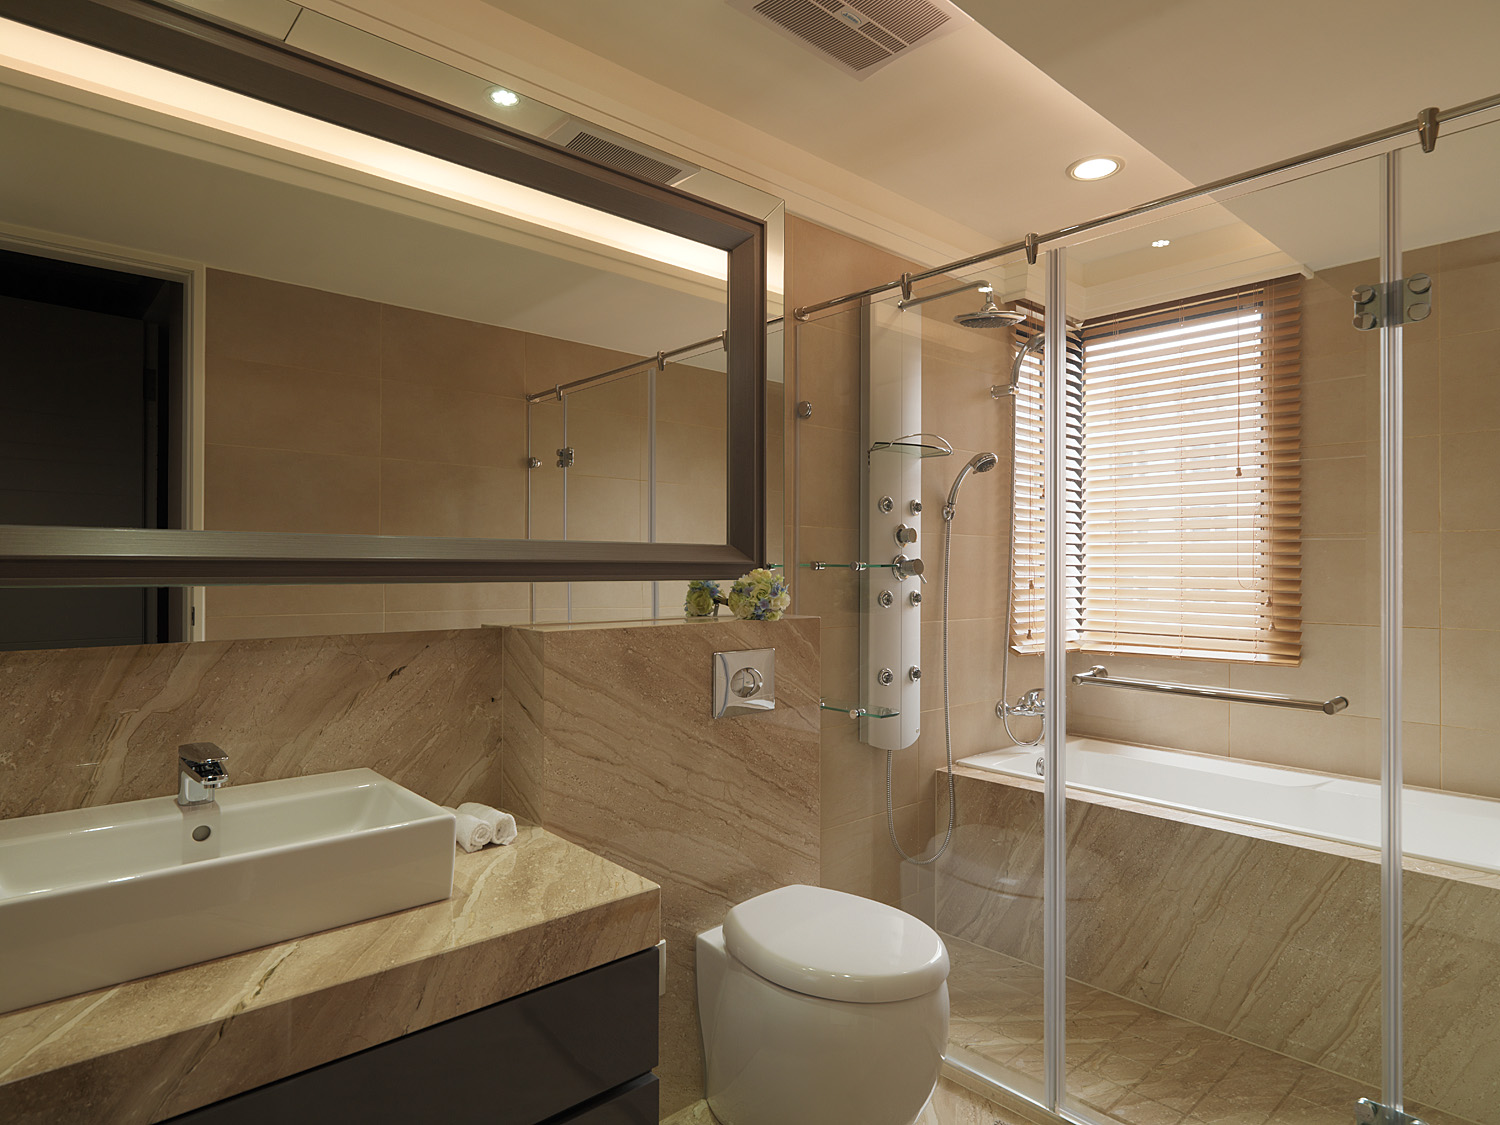 卫浴空间注重功能性，空间设计简约而精致，自由而随性，构筑出独有的生活气质。